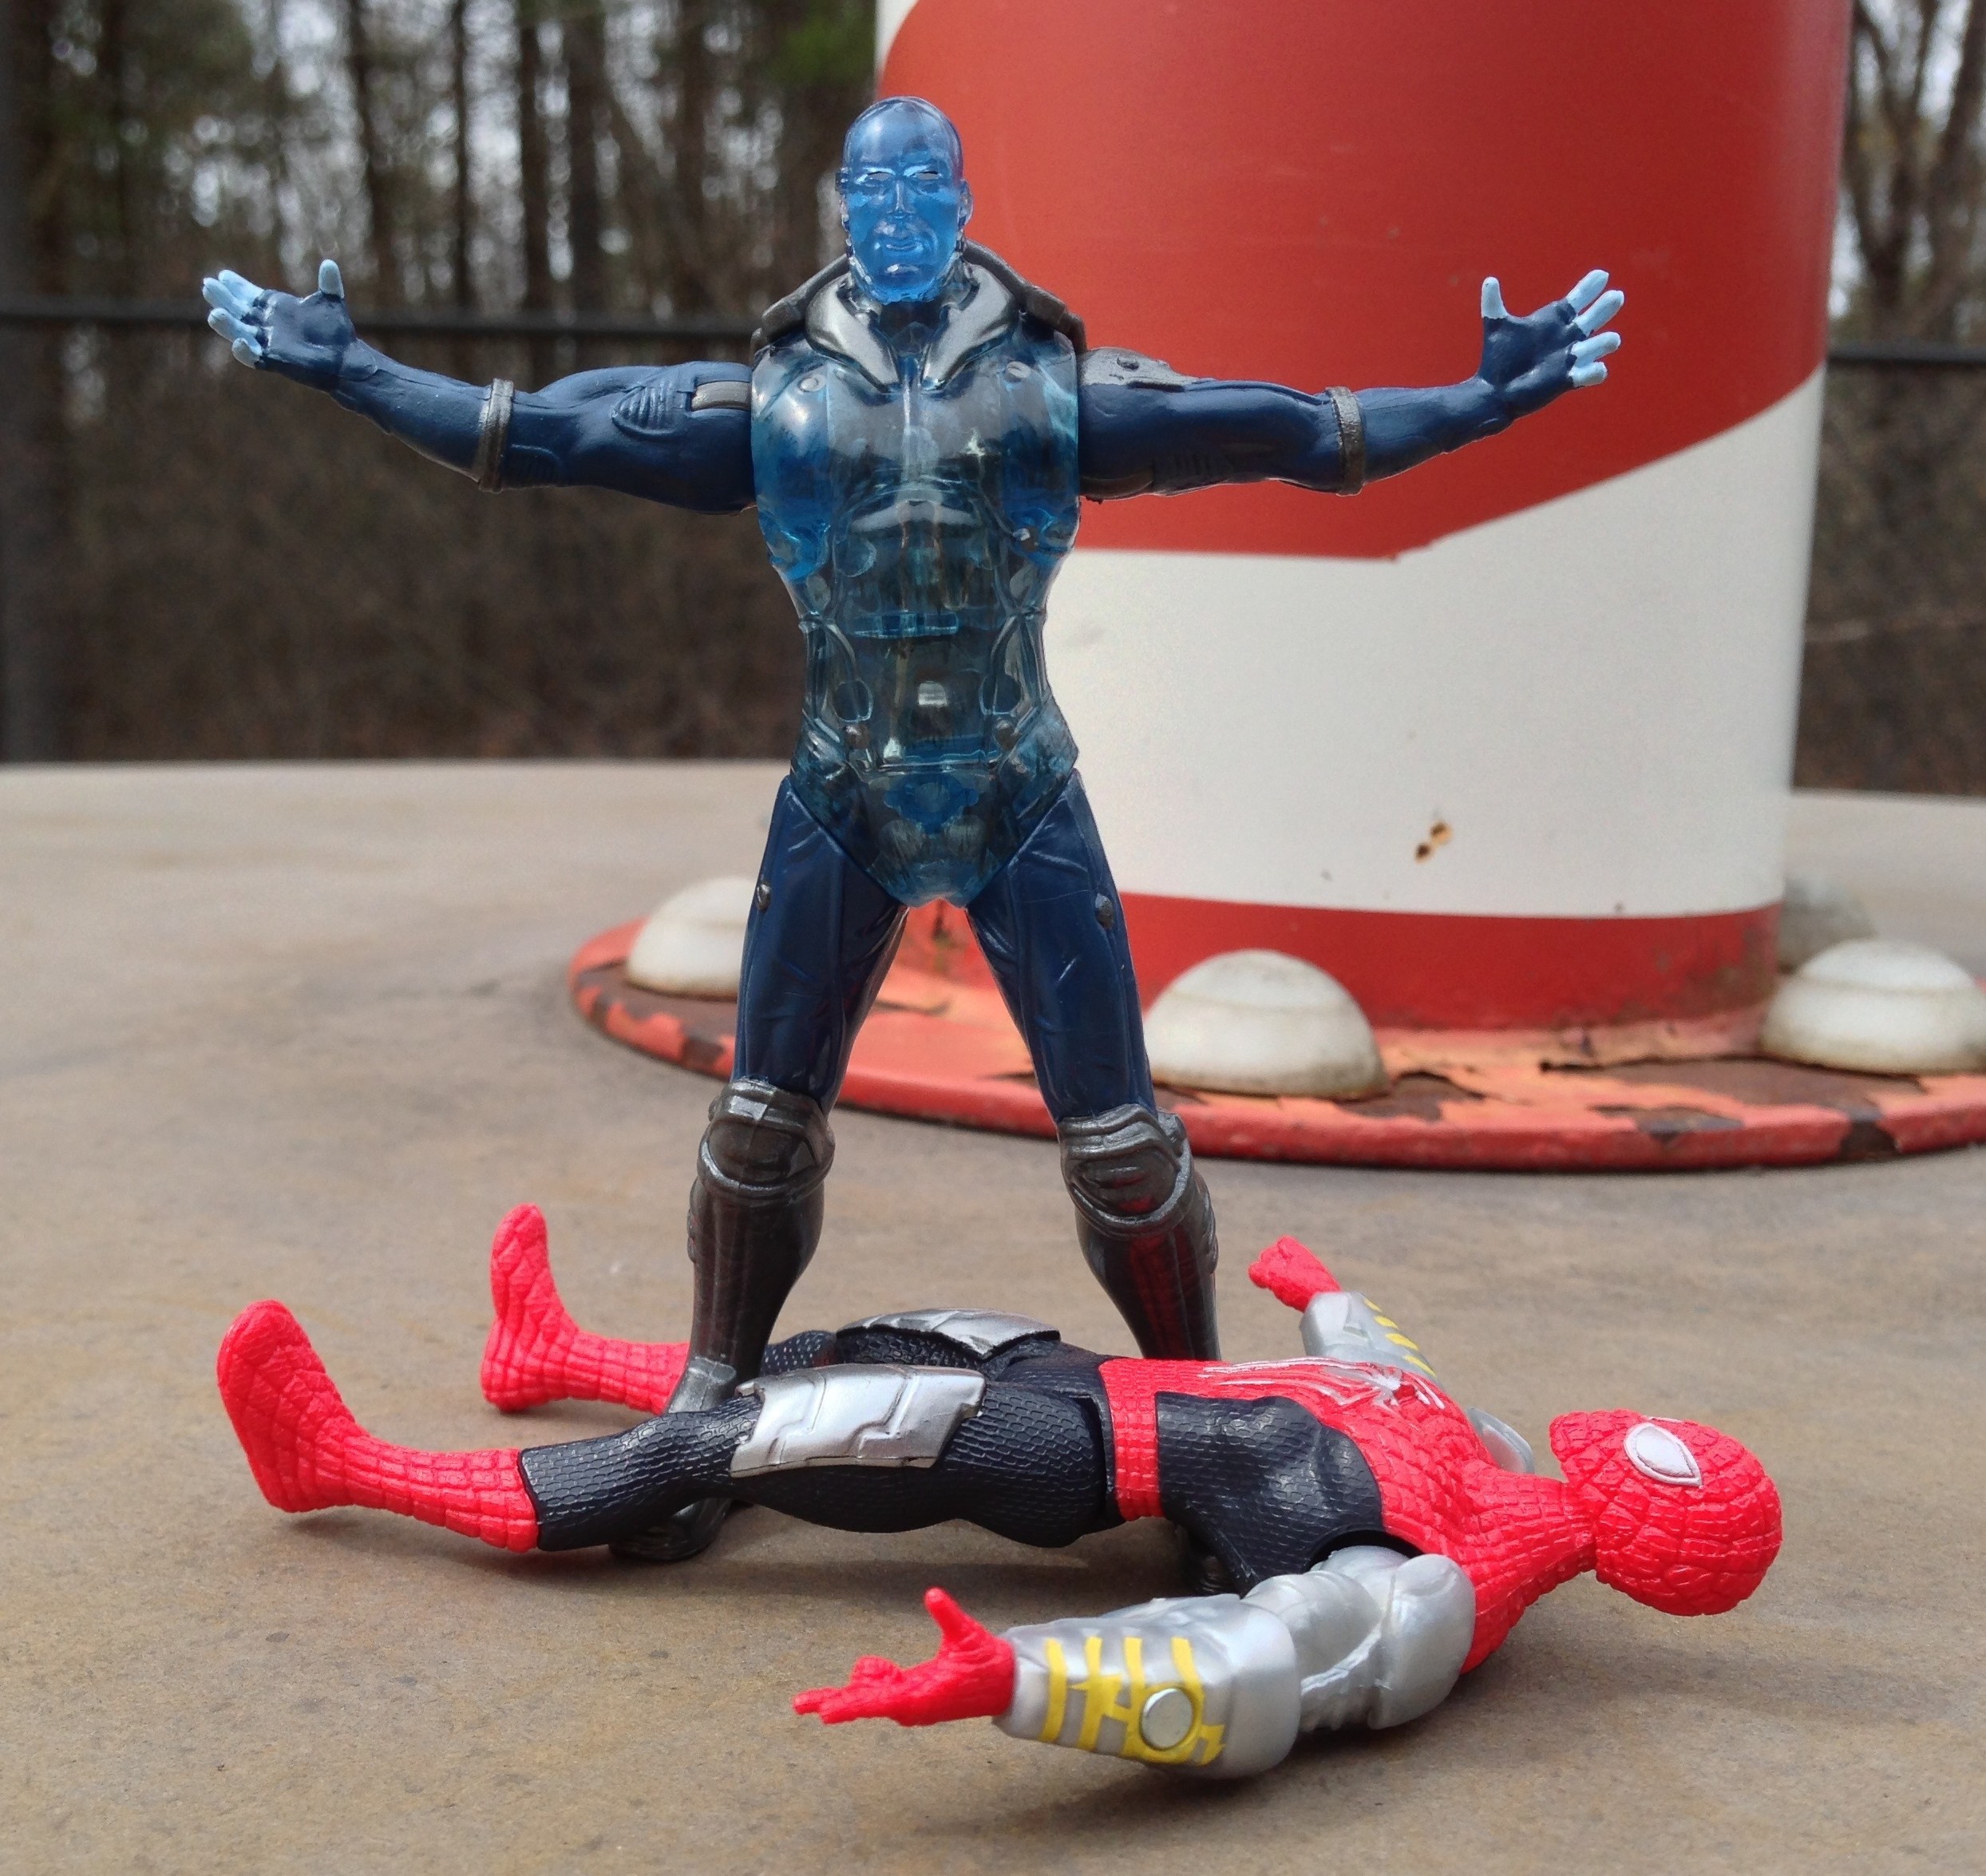 the amazing spider man 2 electro costume revealed